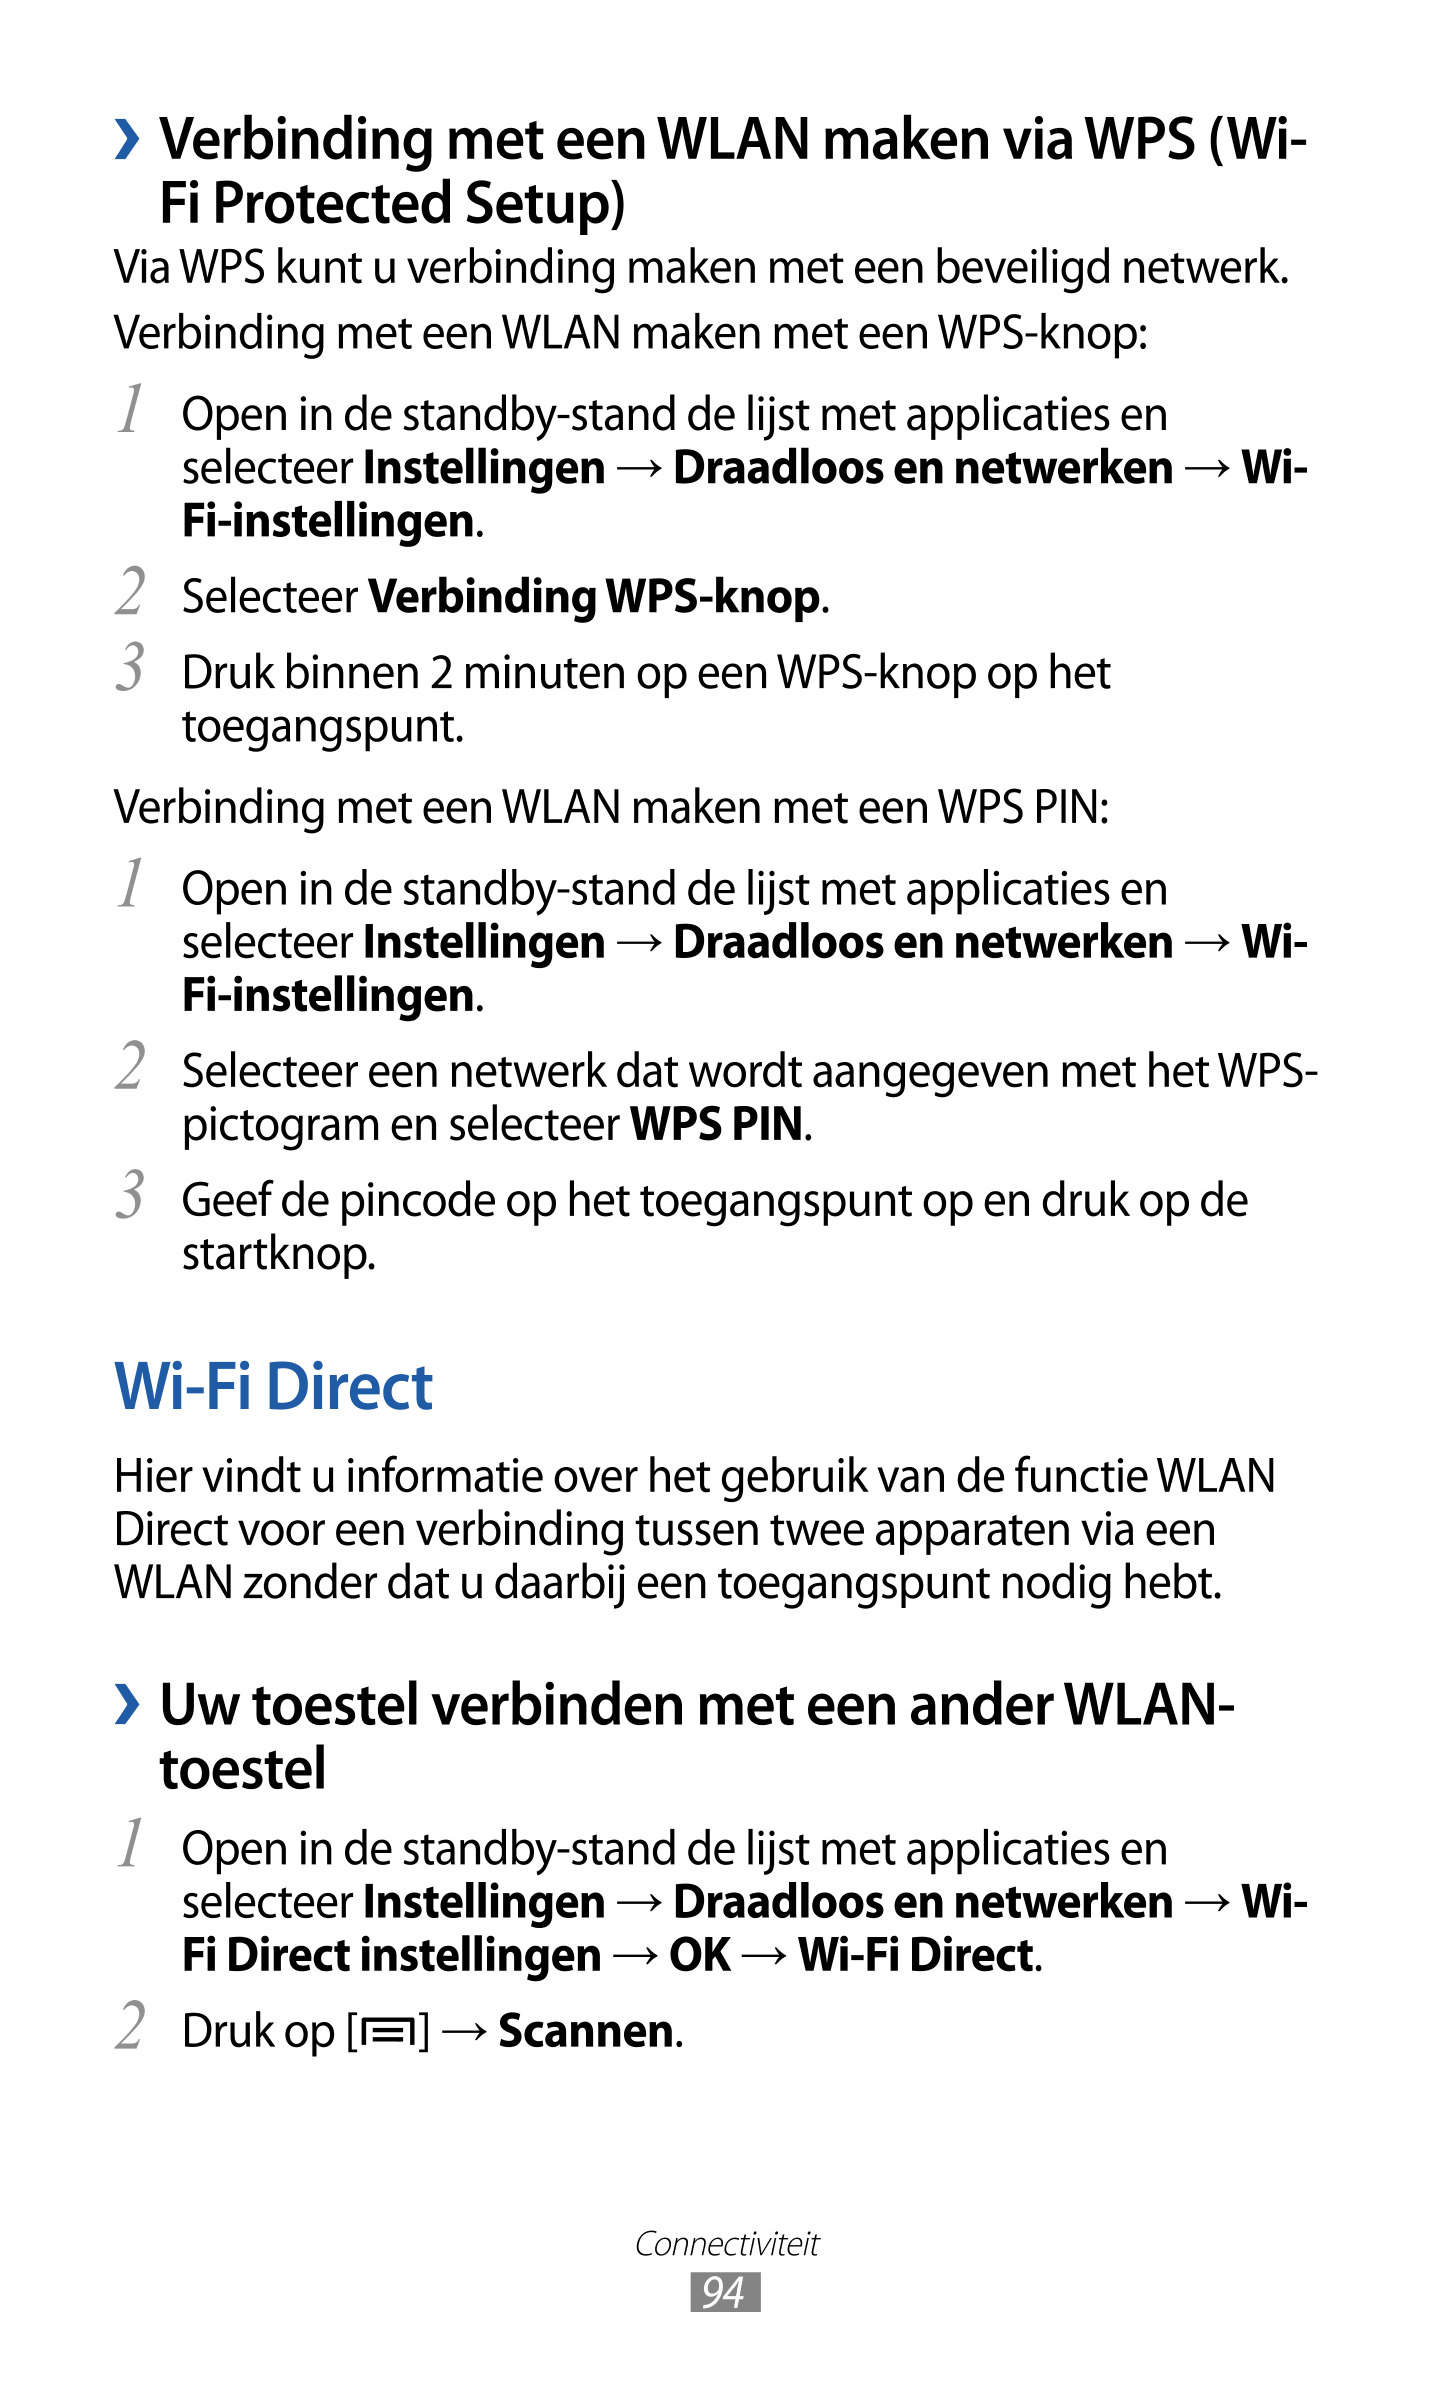   Verbinding met een WLAN maken via WPS (Wi-
Fi Protected Setup)
Via WPS kunt u verbinding maken met een beveiligd netwerk.
Verb